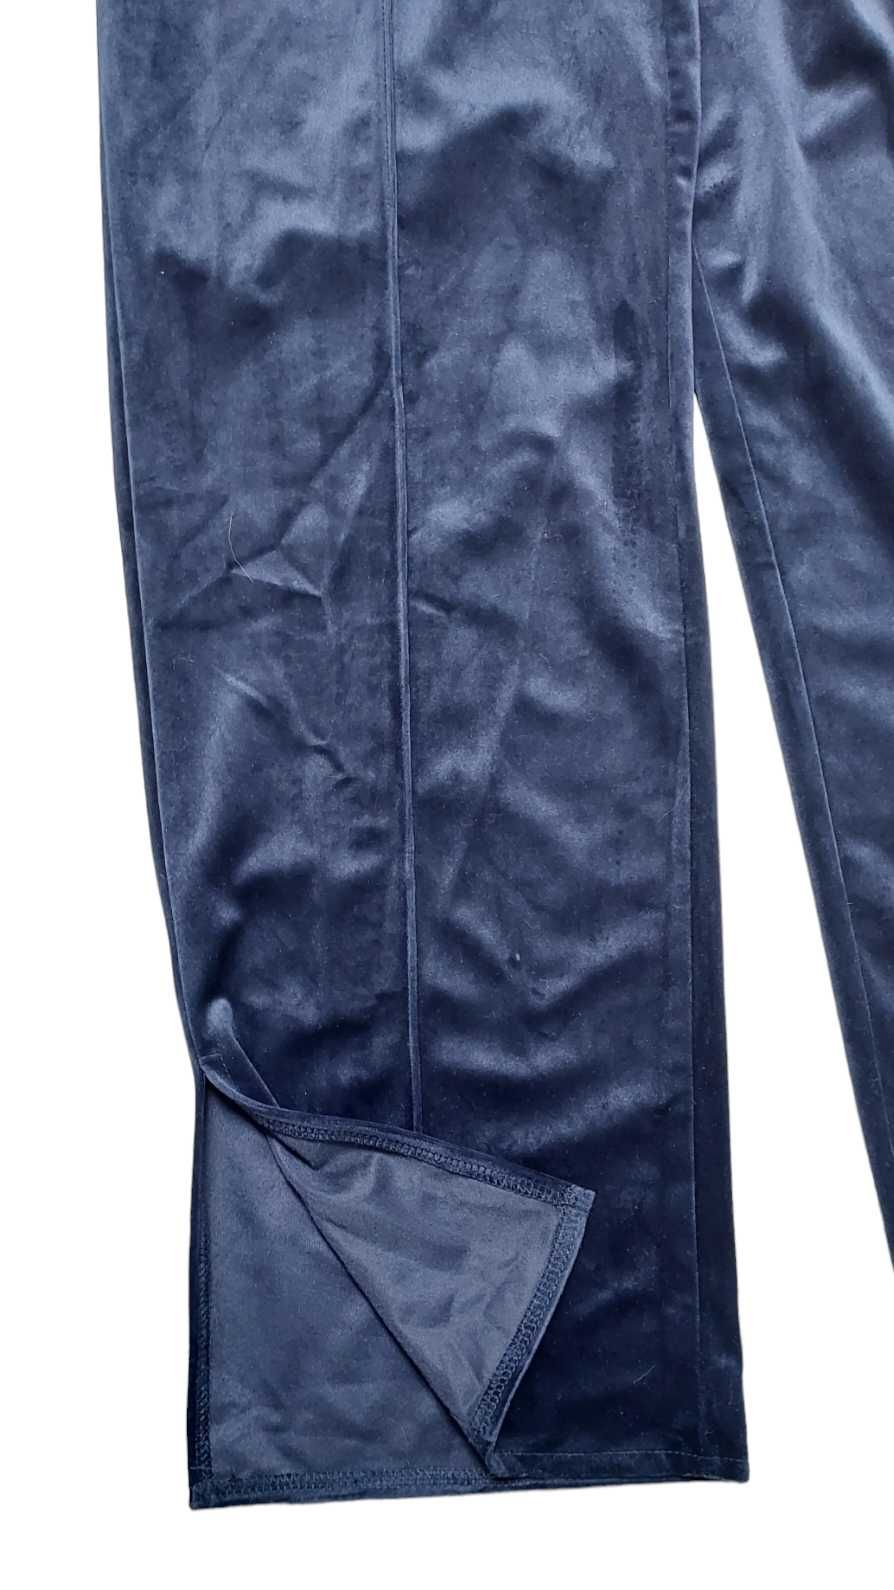 Spodnie dresowe z szerokimi nogawkami MISSGUIDED SEAN JOHN, R. 36